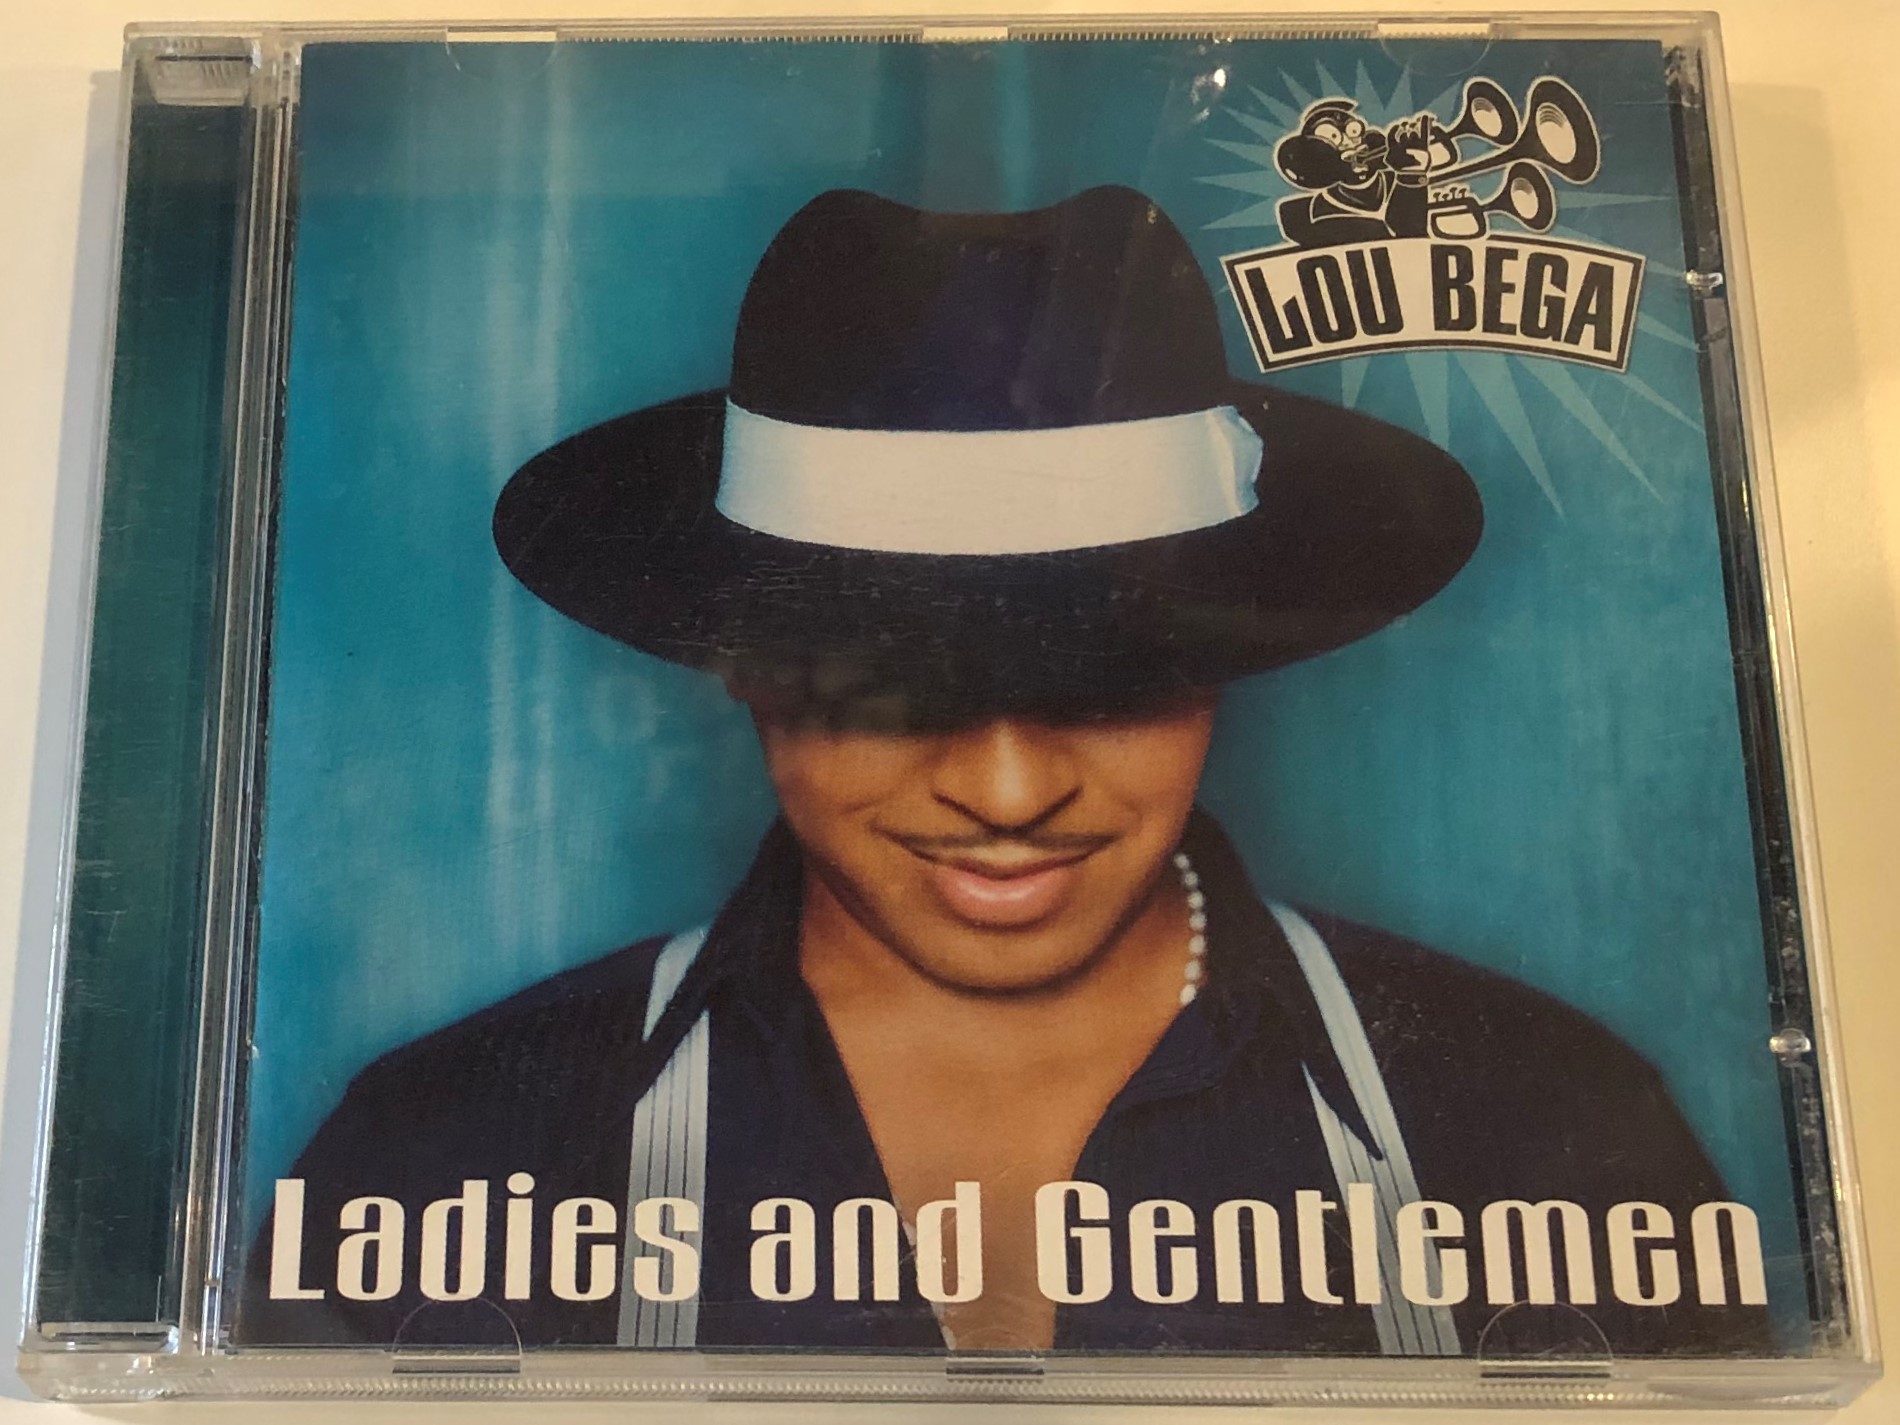 lou-bega-ladies-and-gentlemen-bmg-berlin-musik-gmbh-audio-cd-2001-743218545924-1-.jpg